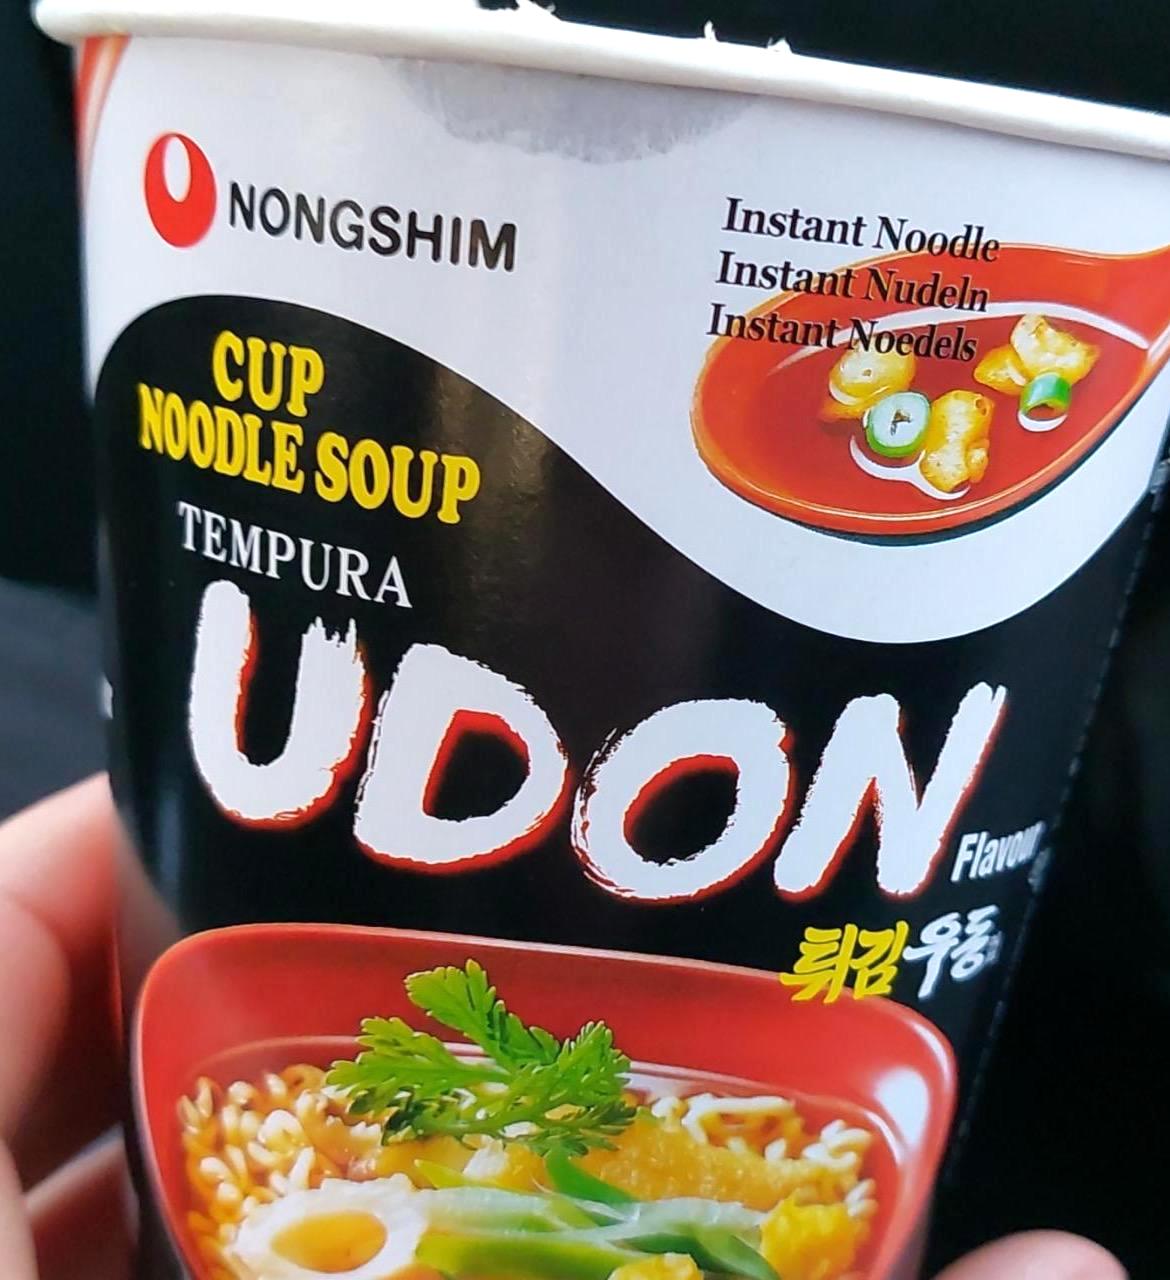 Képek - Cup Noodle Soup Tempura Udon flavour Nongshim